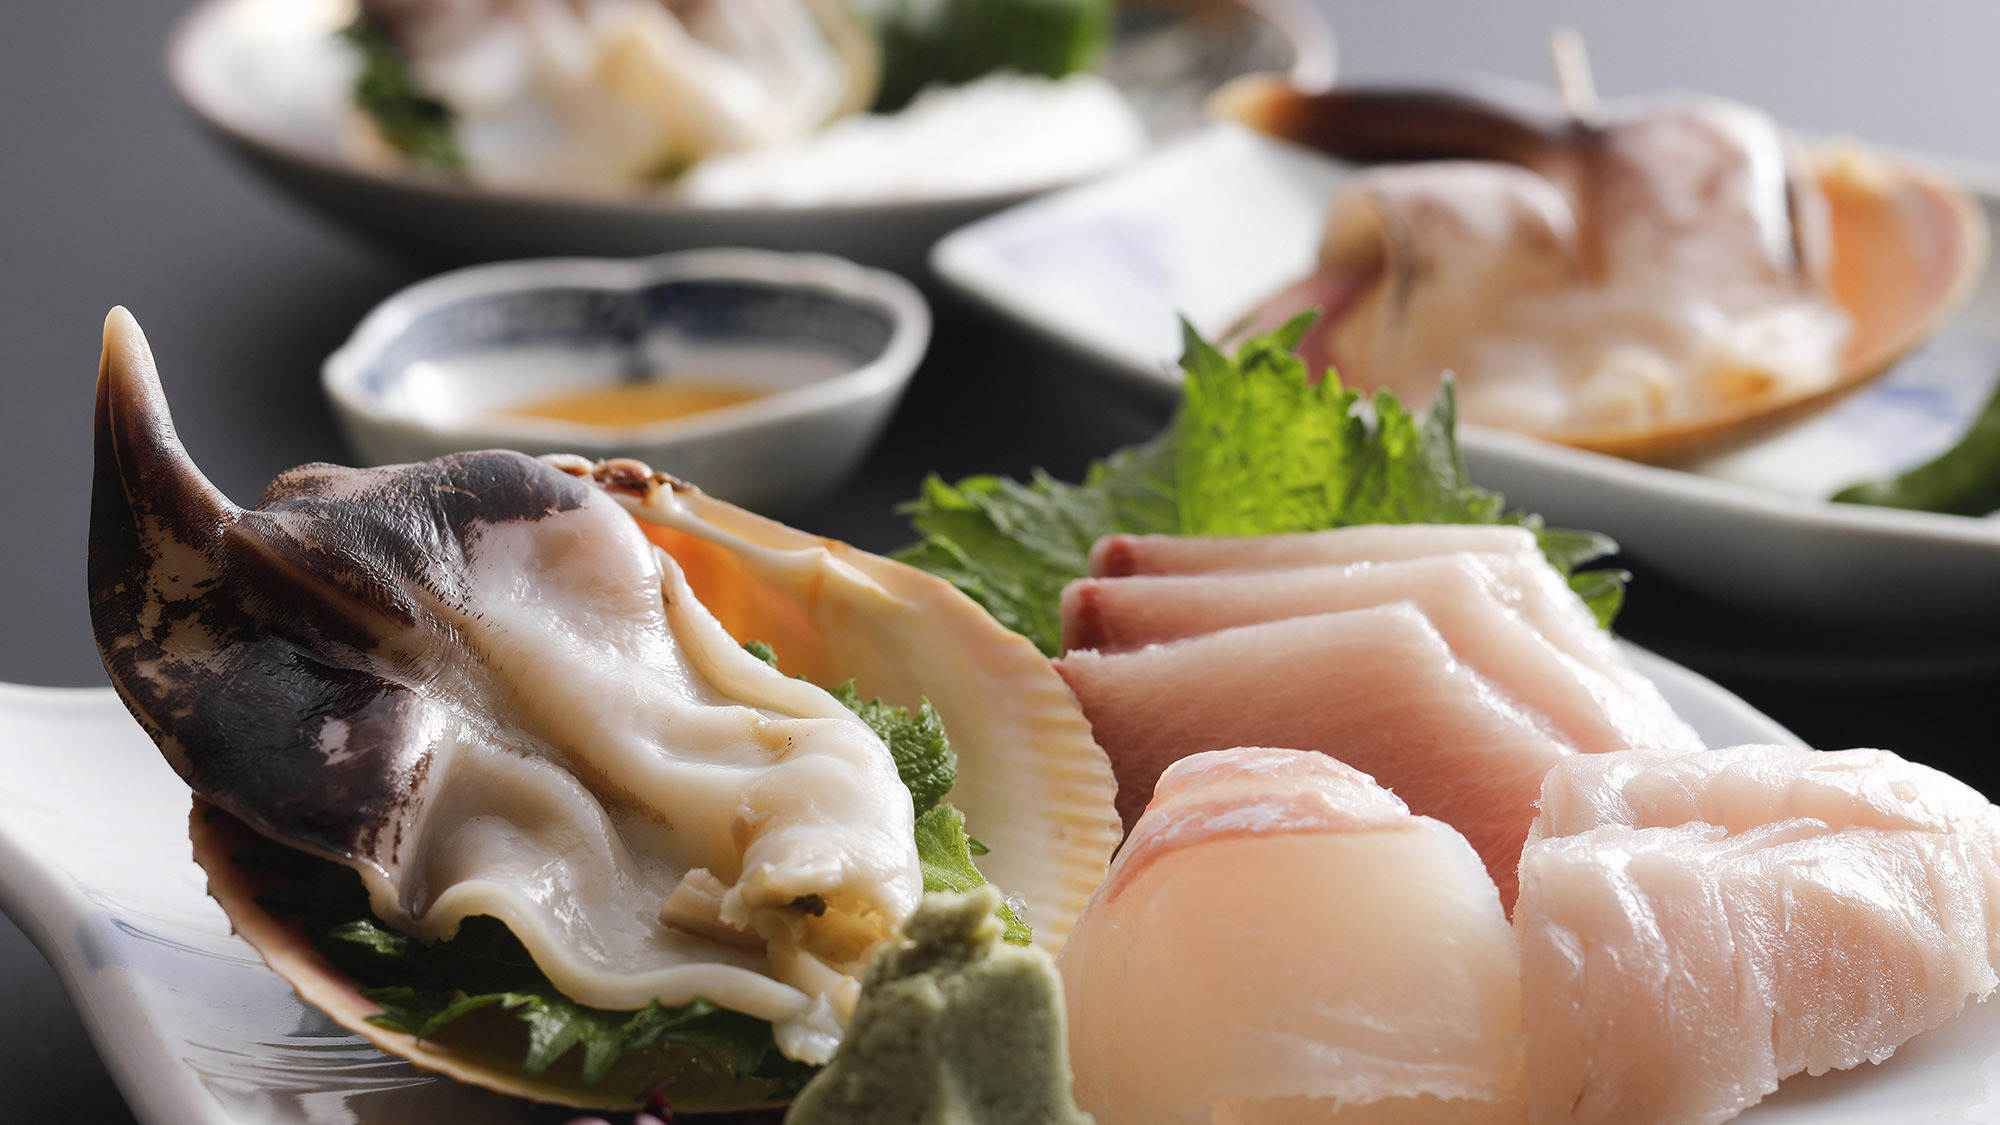 ・【トリ貝料理】天橋立の初夏の味。コリコリした食感がクセになります